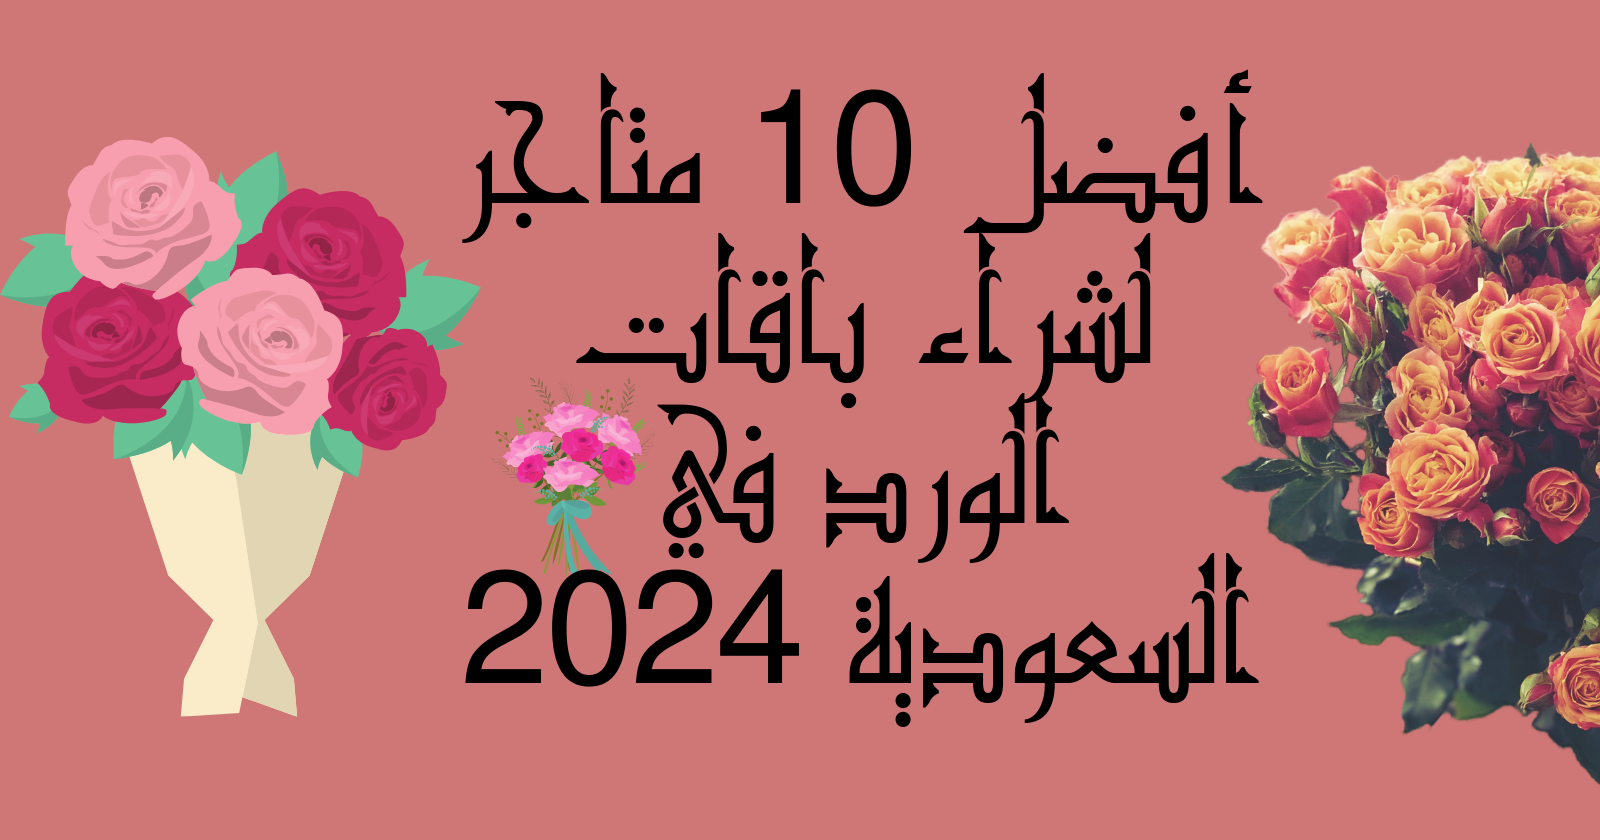 أفضل 10 متاجر لشراء باقات الورد في السعودية 2024